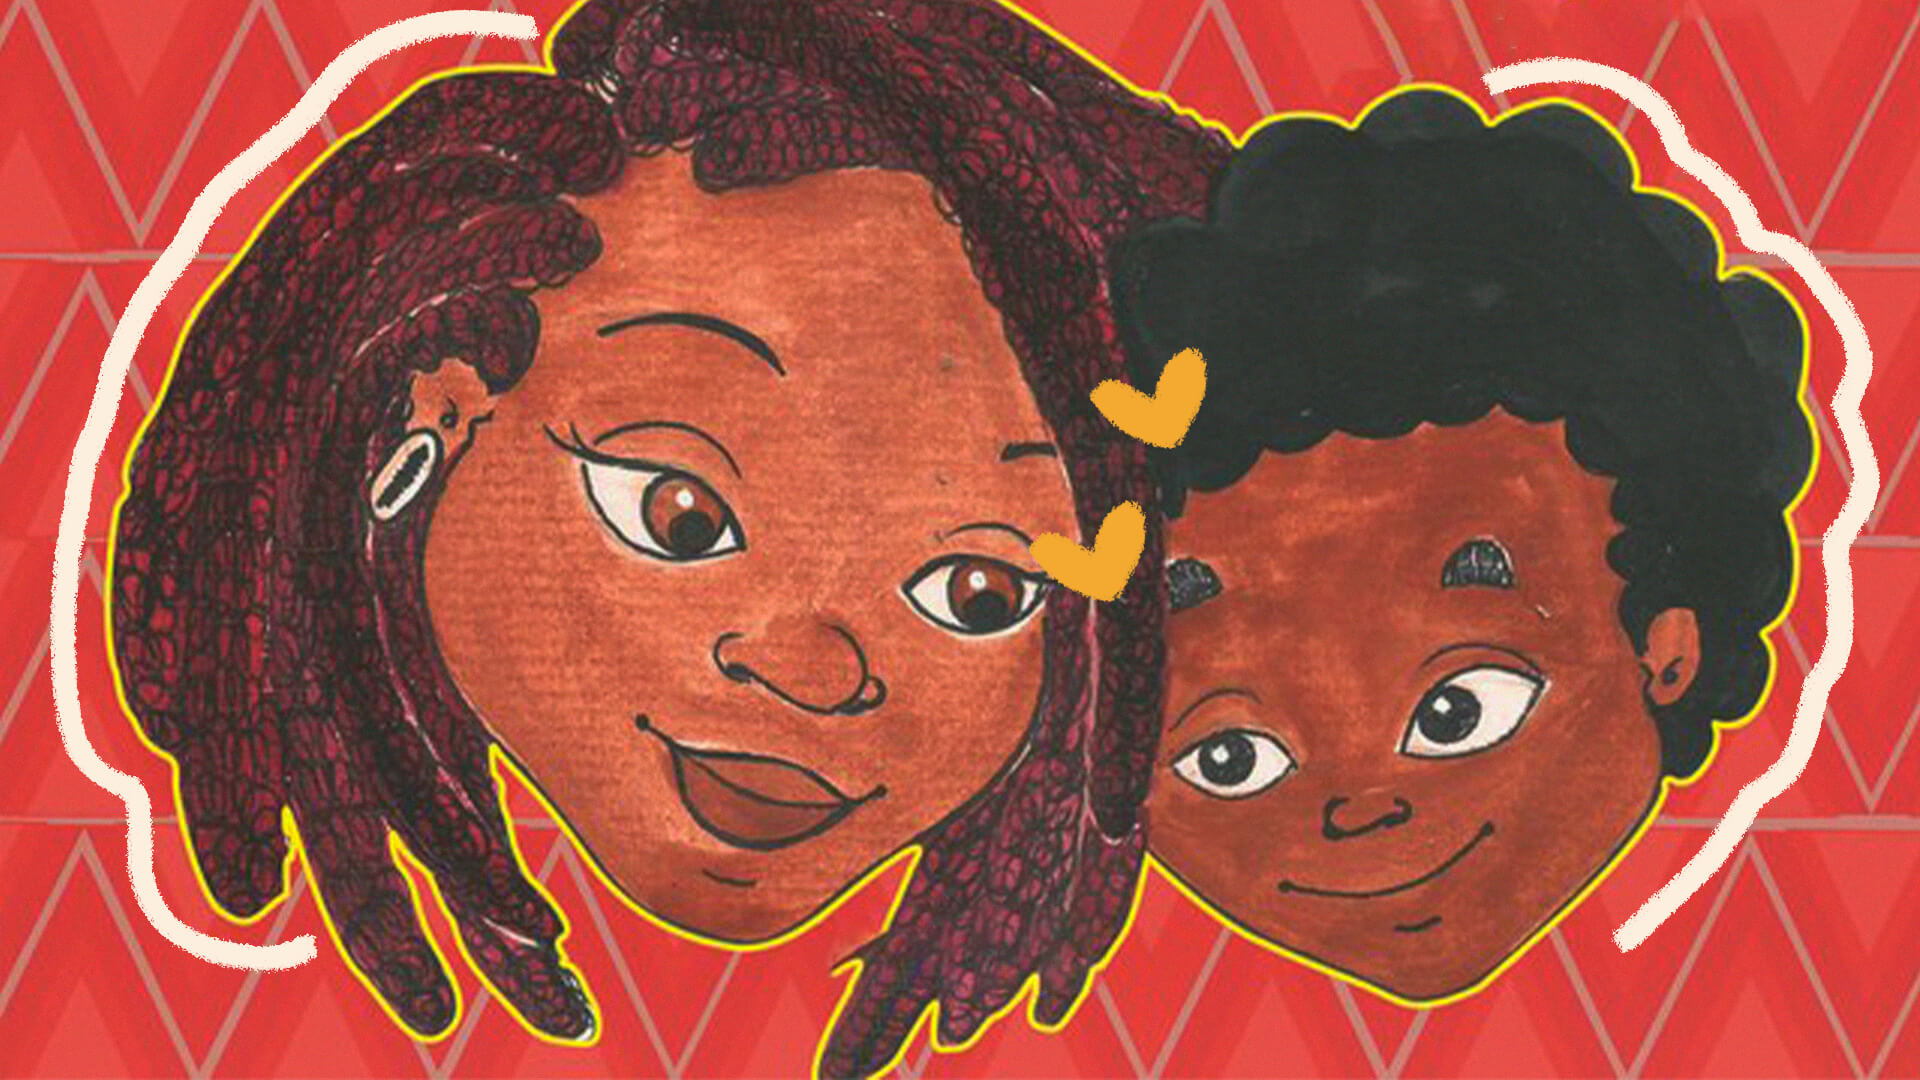 Na ilustração, o rosto dos personagens Najima e Akin, mãe e filho. Najima é uma mulher negra que possui tranças chanel na cor marrom; Akin é um menino negro com cabelo black. A imagem possui intervenções de rabiscos coloridos.